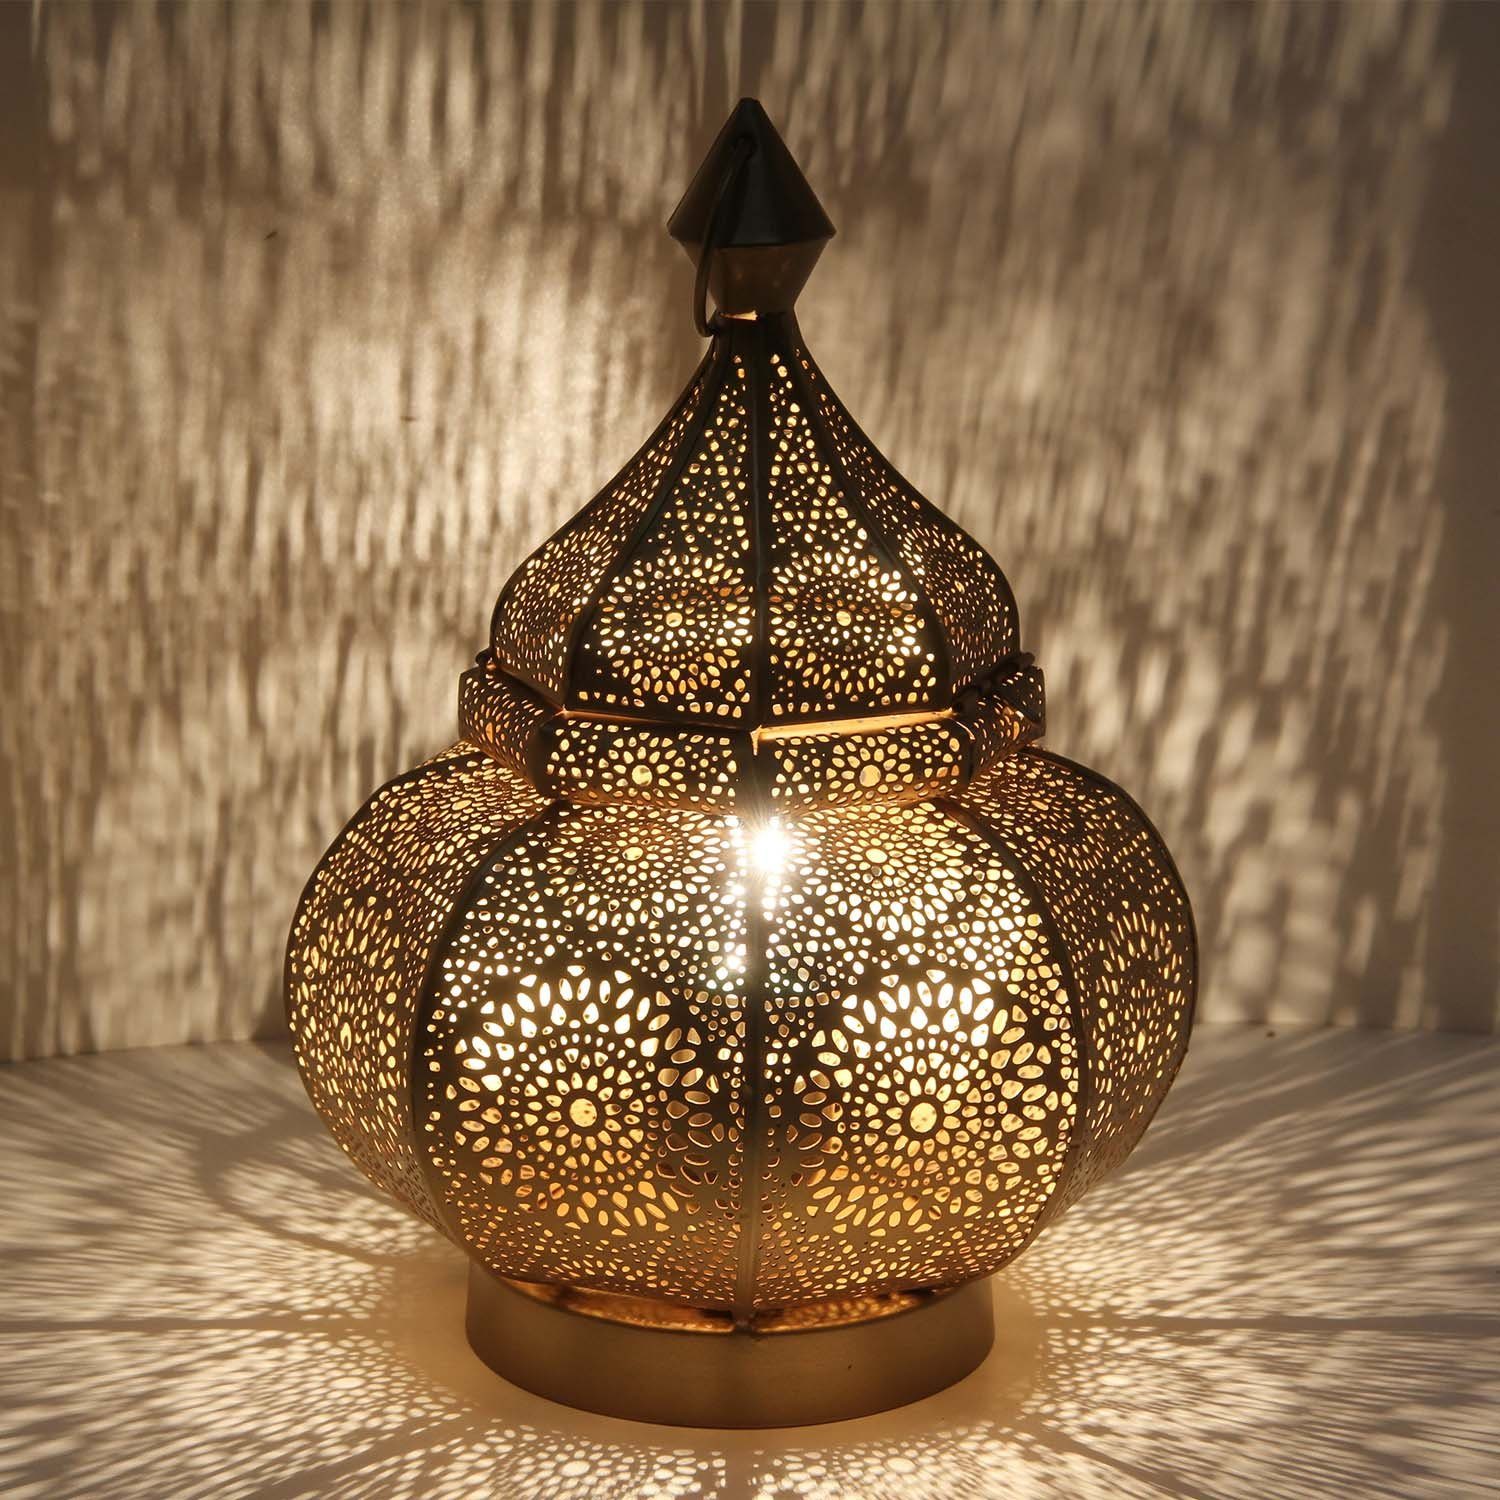 Casa Moro Nachttischlampe Orientalische Tischlampe Gohar in Antik-Gold Look LN2090, ohne Leuchtmittel, Nacttischlampe, Bodenlampe, Schöne Weihnachtbeleuchtung